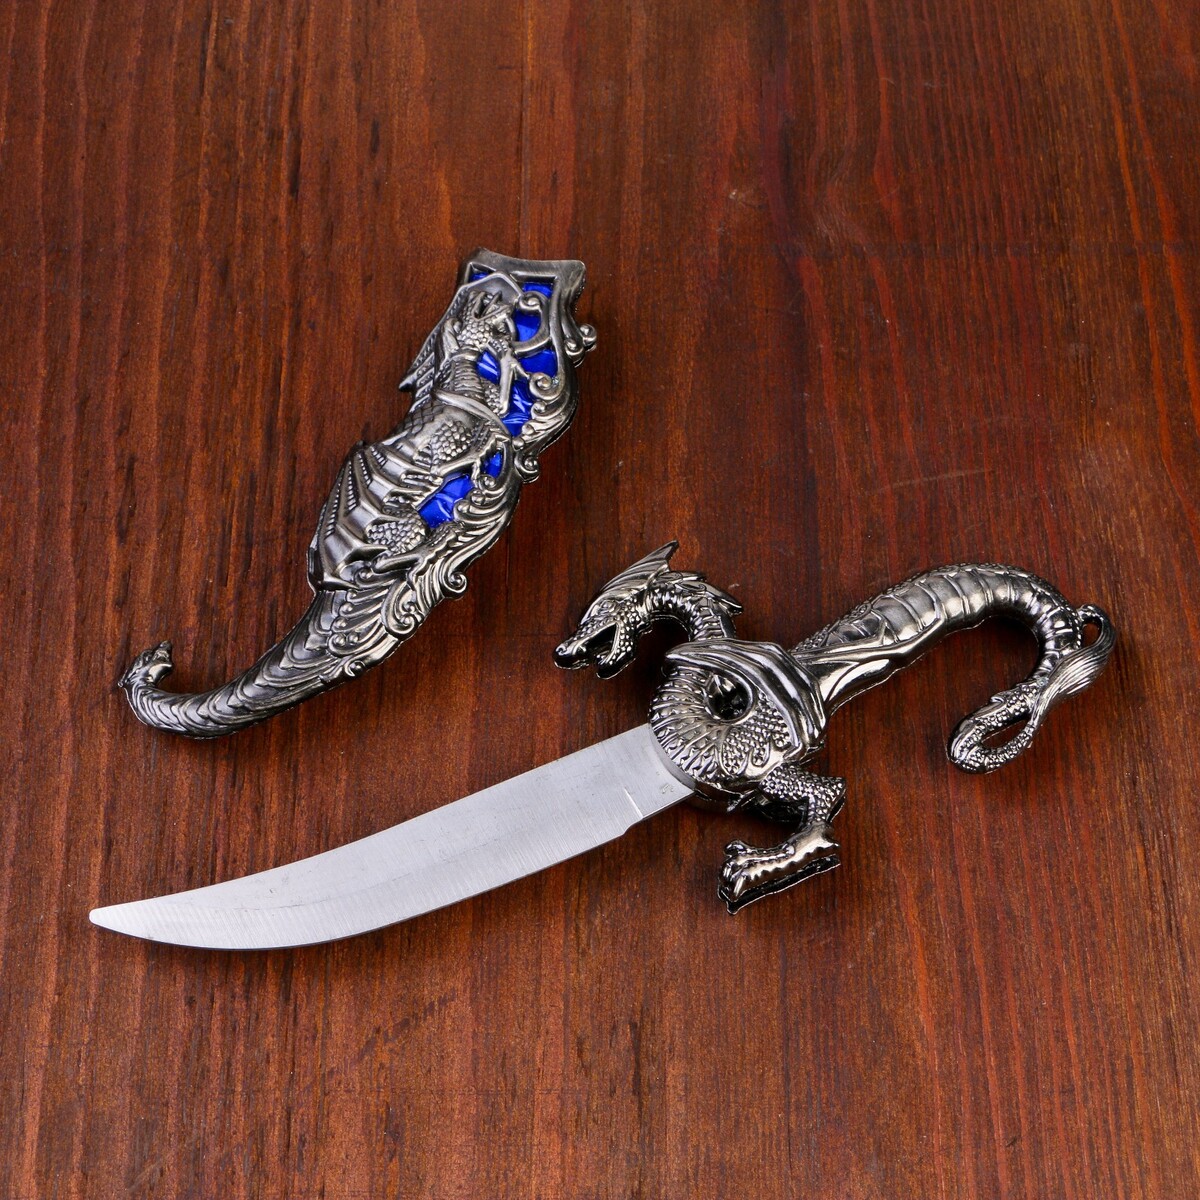 Сувенирный нож, 24,5 см резные ножны, дракон на рукояти академия моримэр мой несносный дракон